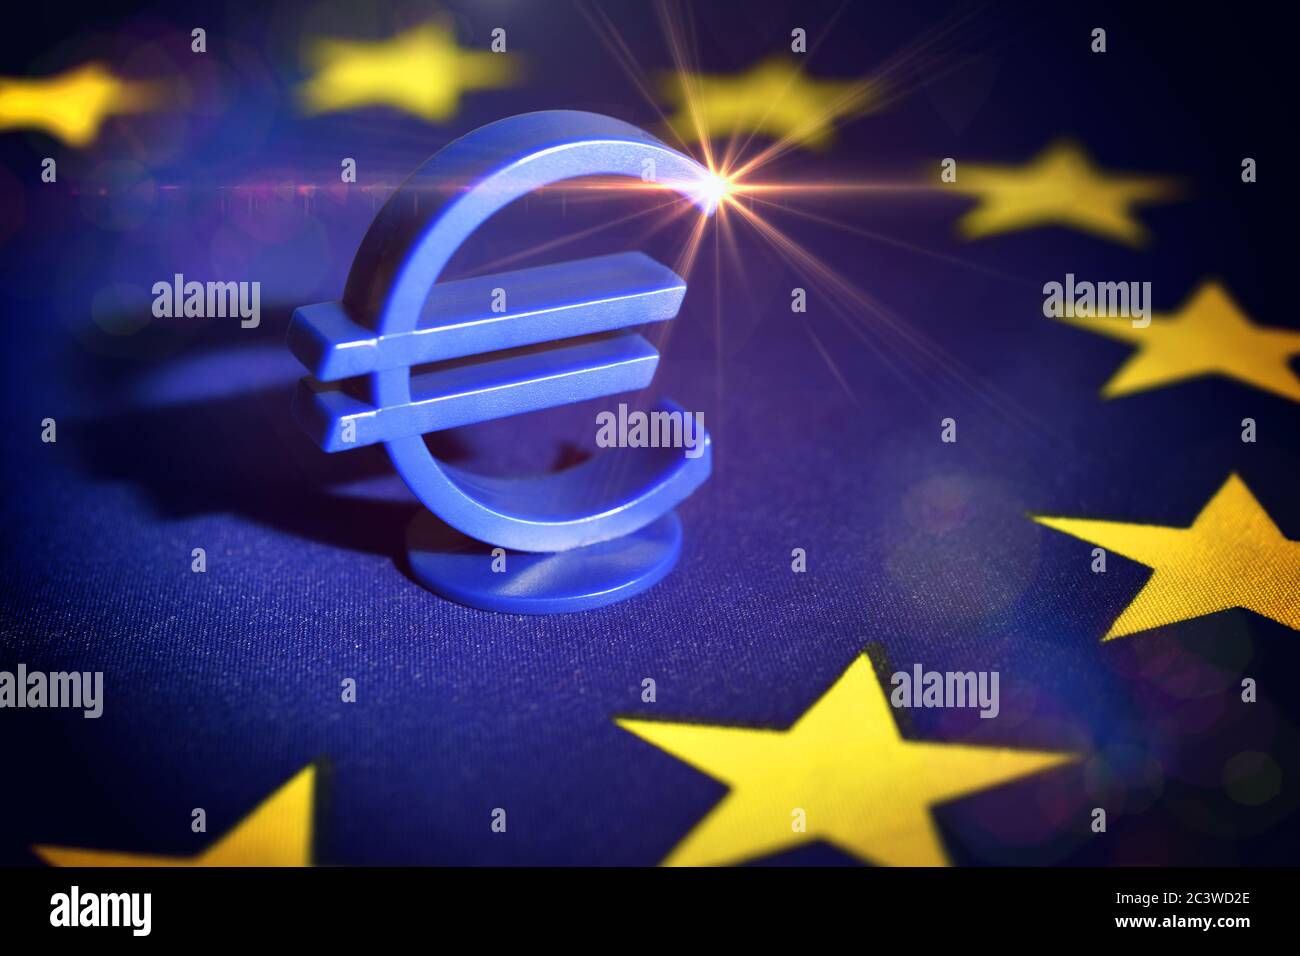 Euro sign on EU flag, EU Reconstruction Fund and EU aid, Eurozeichen auf EU-Fahne, EU-Wiederaufbaufonds und EU-Hilfen Stock Photo